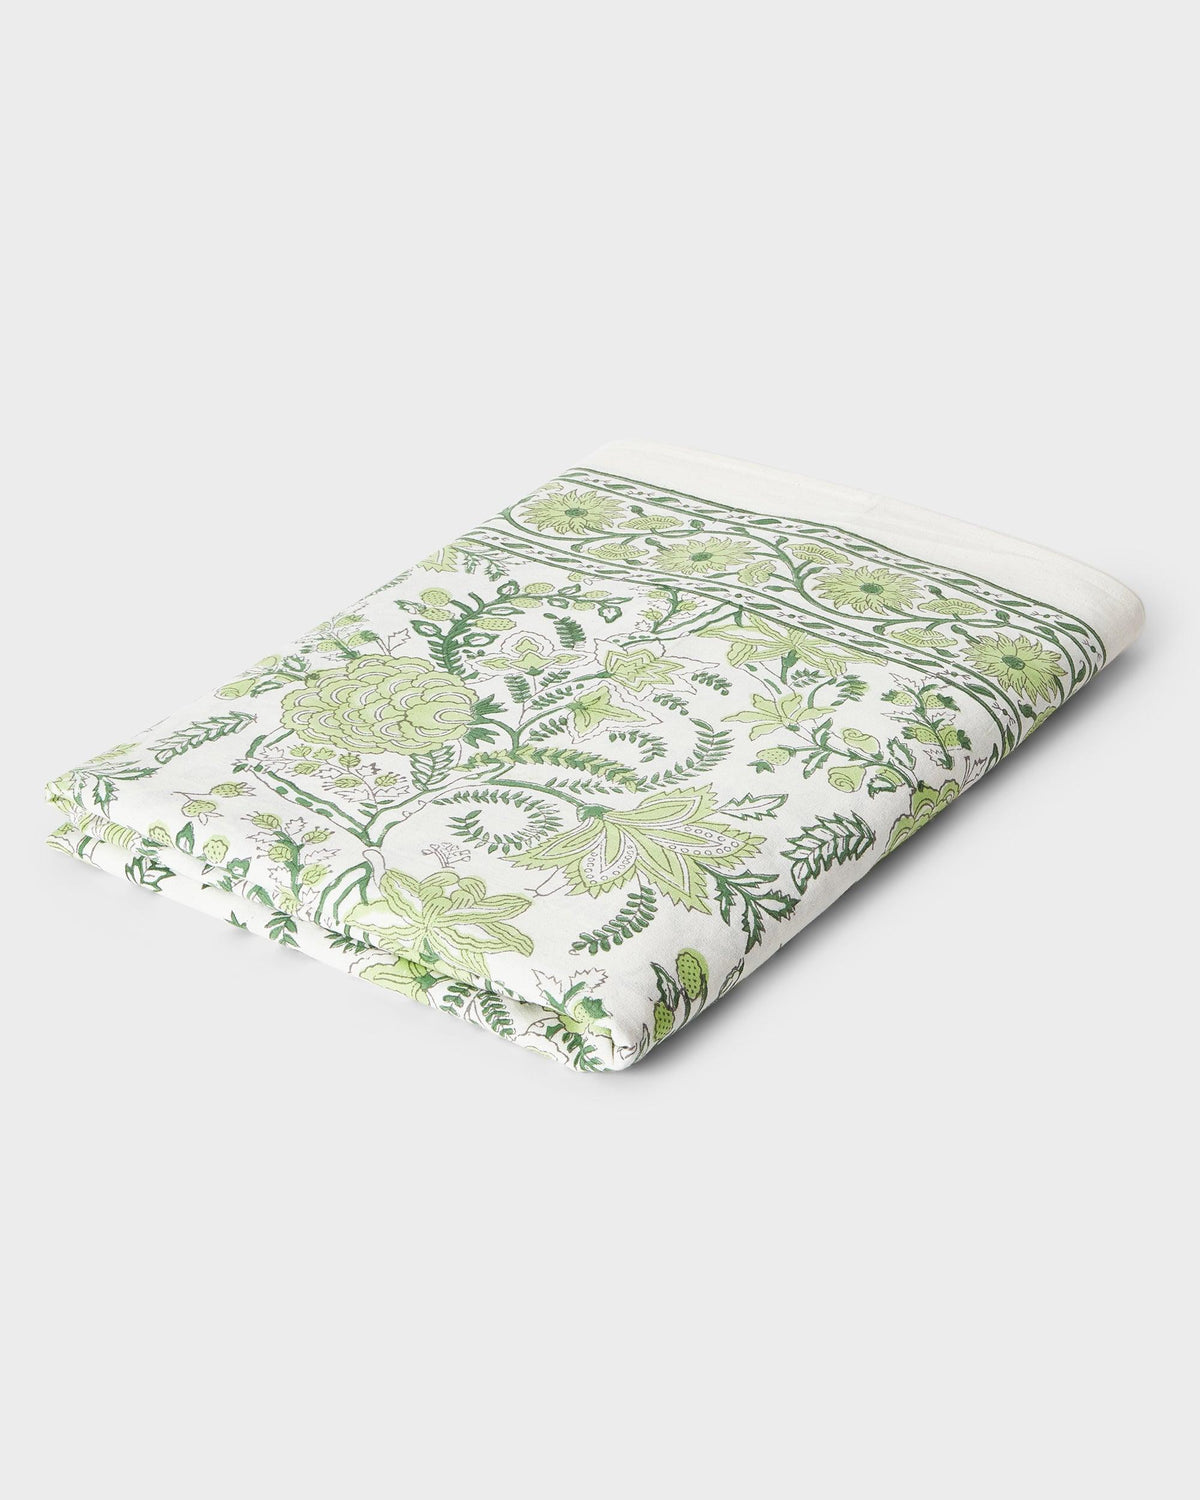 Von Home's Block Print Tablecloth - Green flowers - Von Home